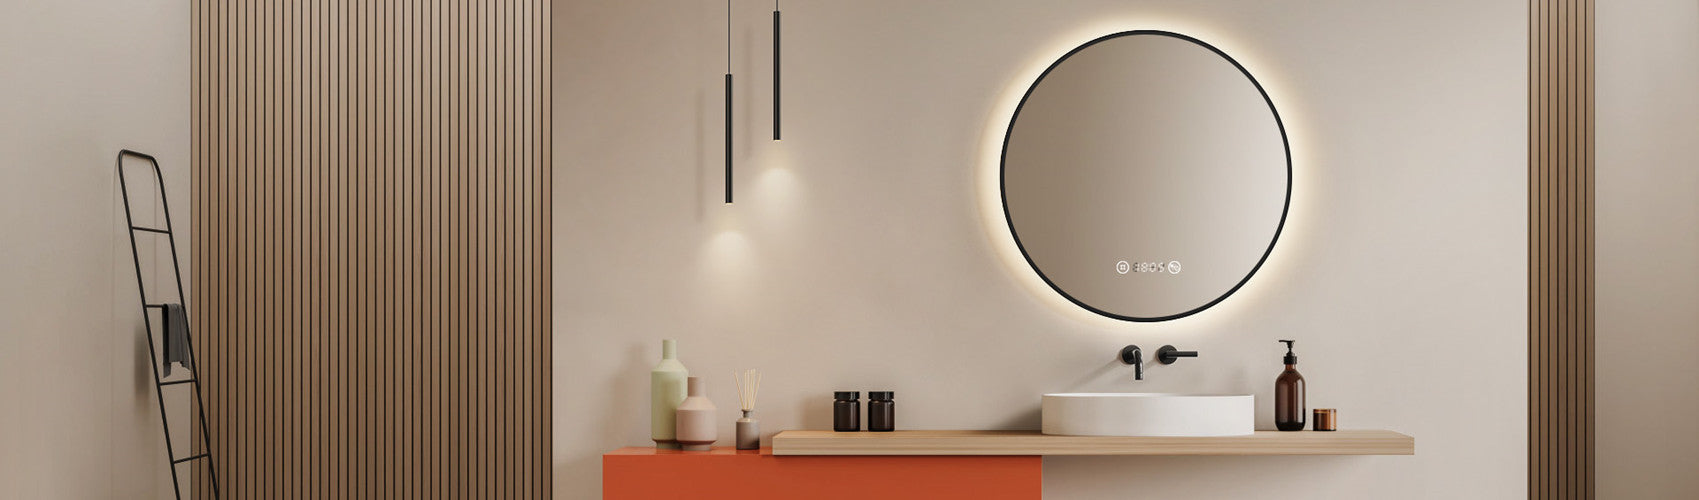 LED Spiegel - Badspiegel mit LED Beleuchtung - Wandspiegel